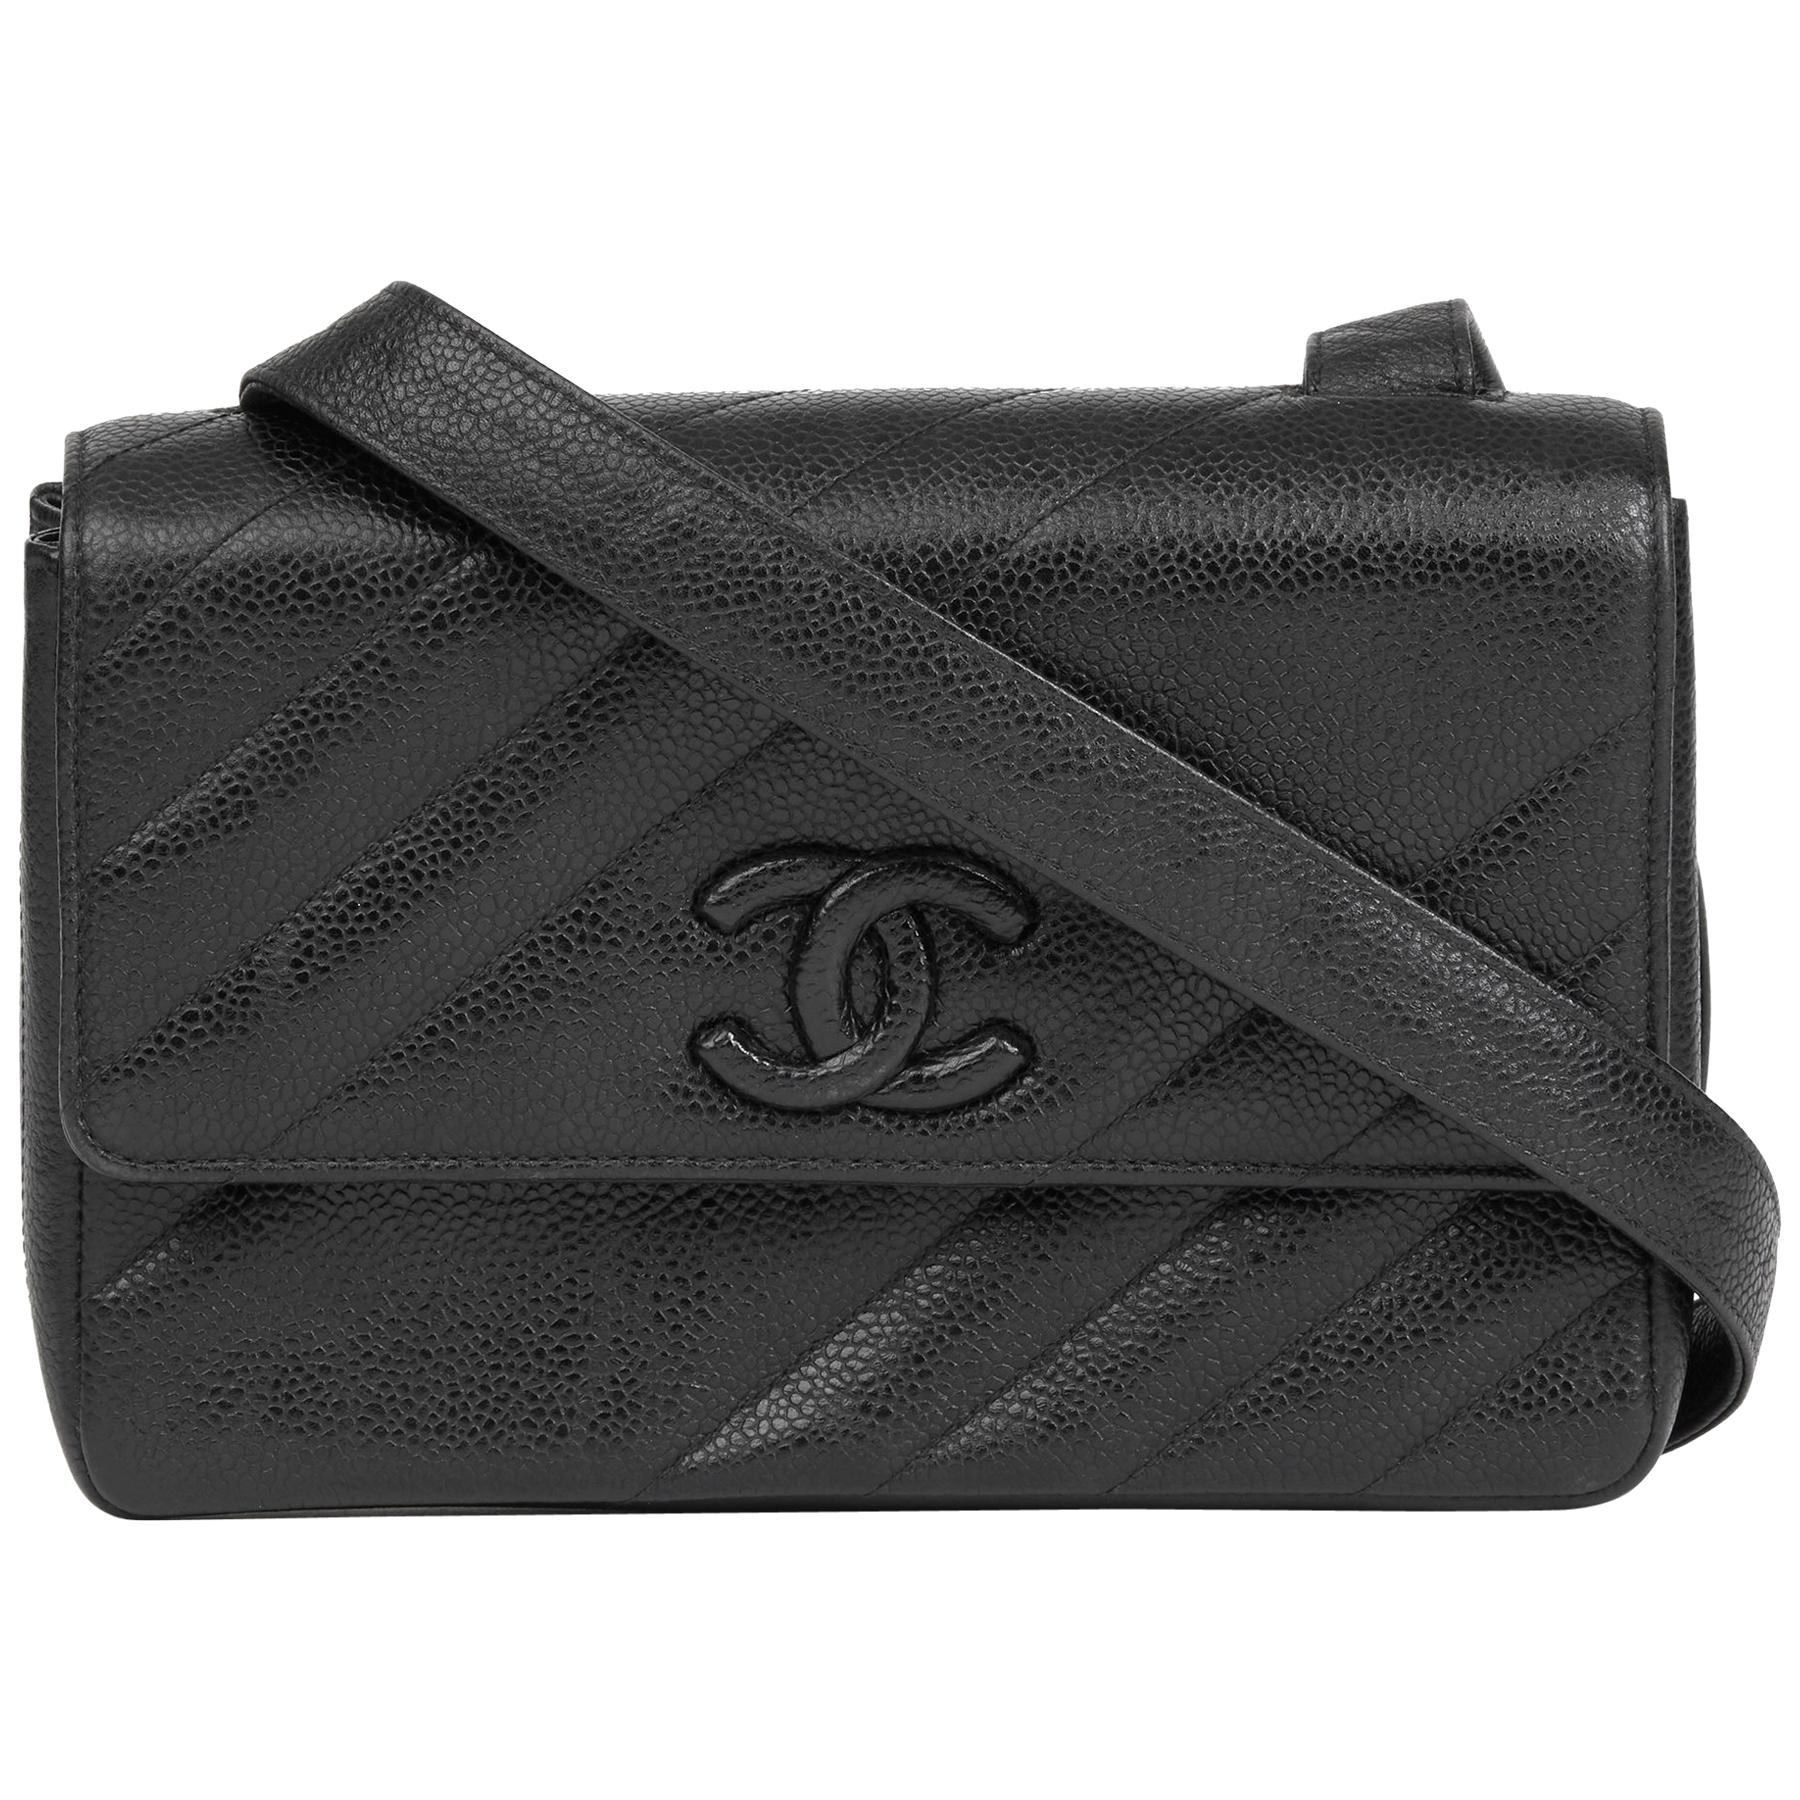 1994 Chanel Black Diagonal Quilted Caviar Leather Vintage Logo Shoulder Bag